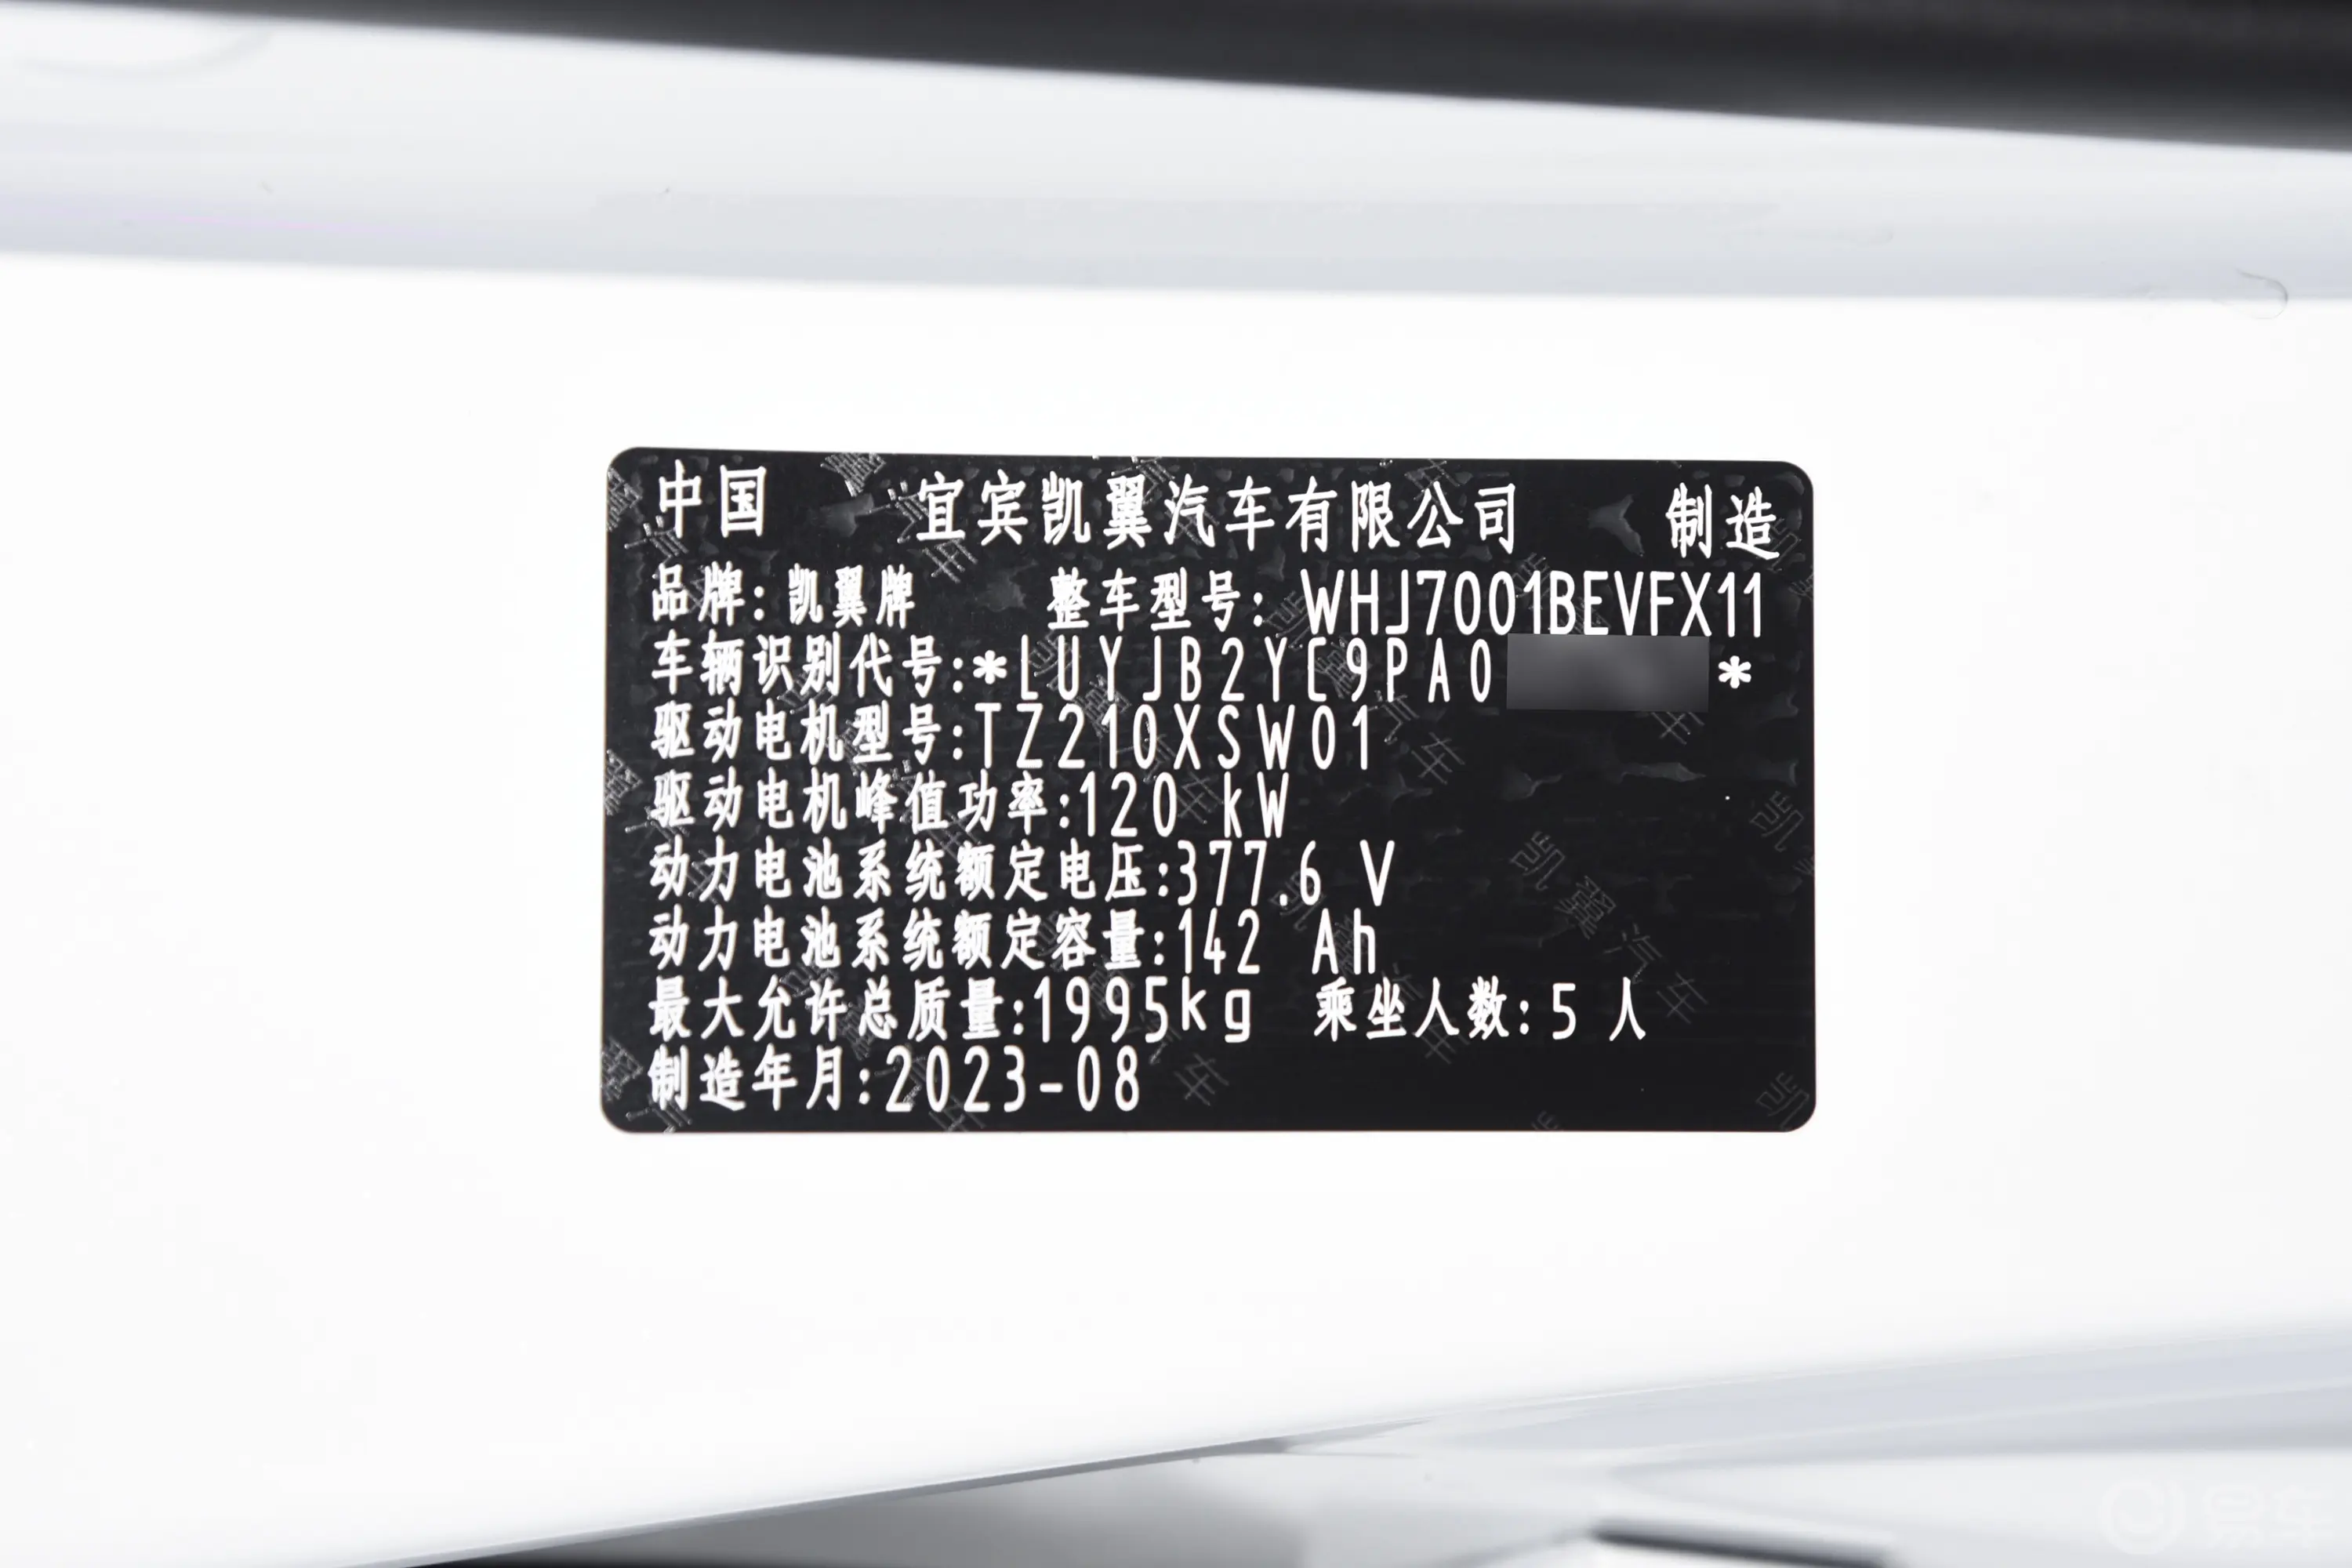 炫界Pro EV401km 悦享版车辆信息铭牌